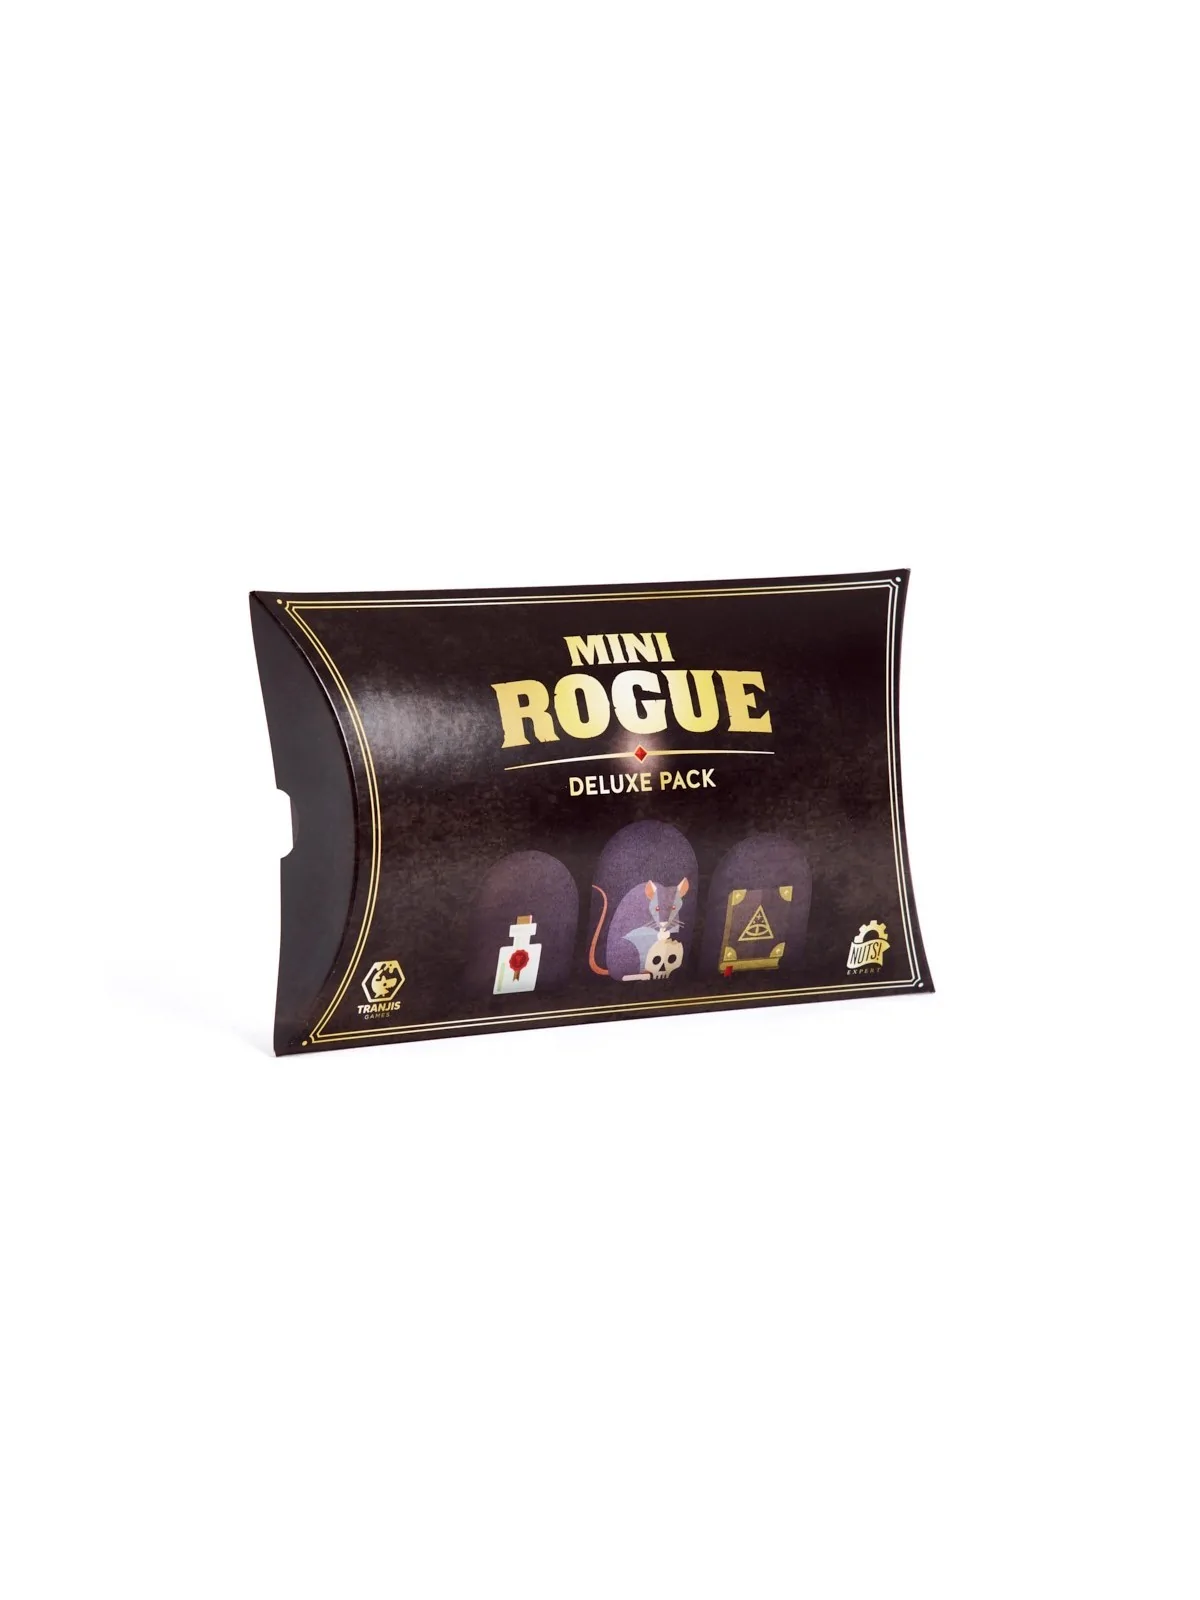 Comprar Mini Rogue: Deluxe Pack barato al mejor precio 22,46 € de Tran